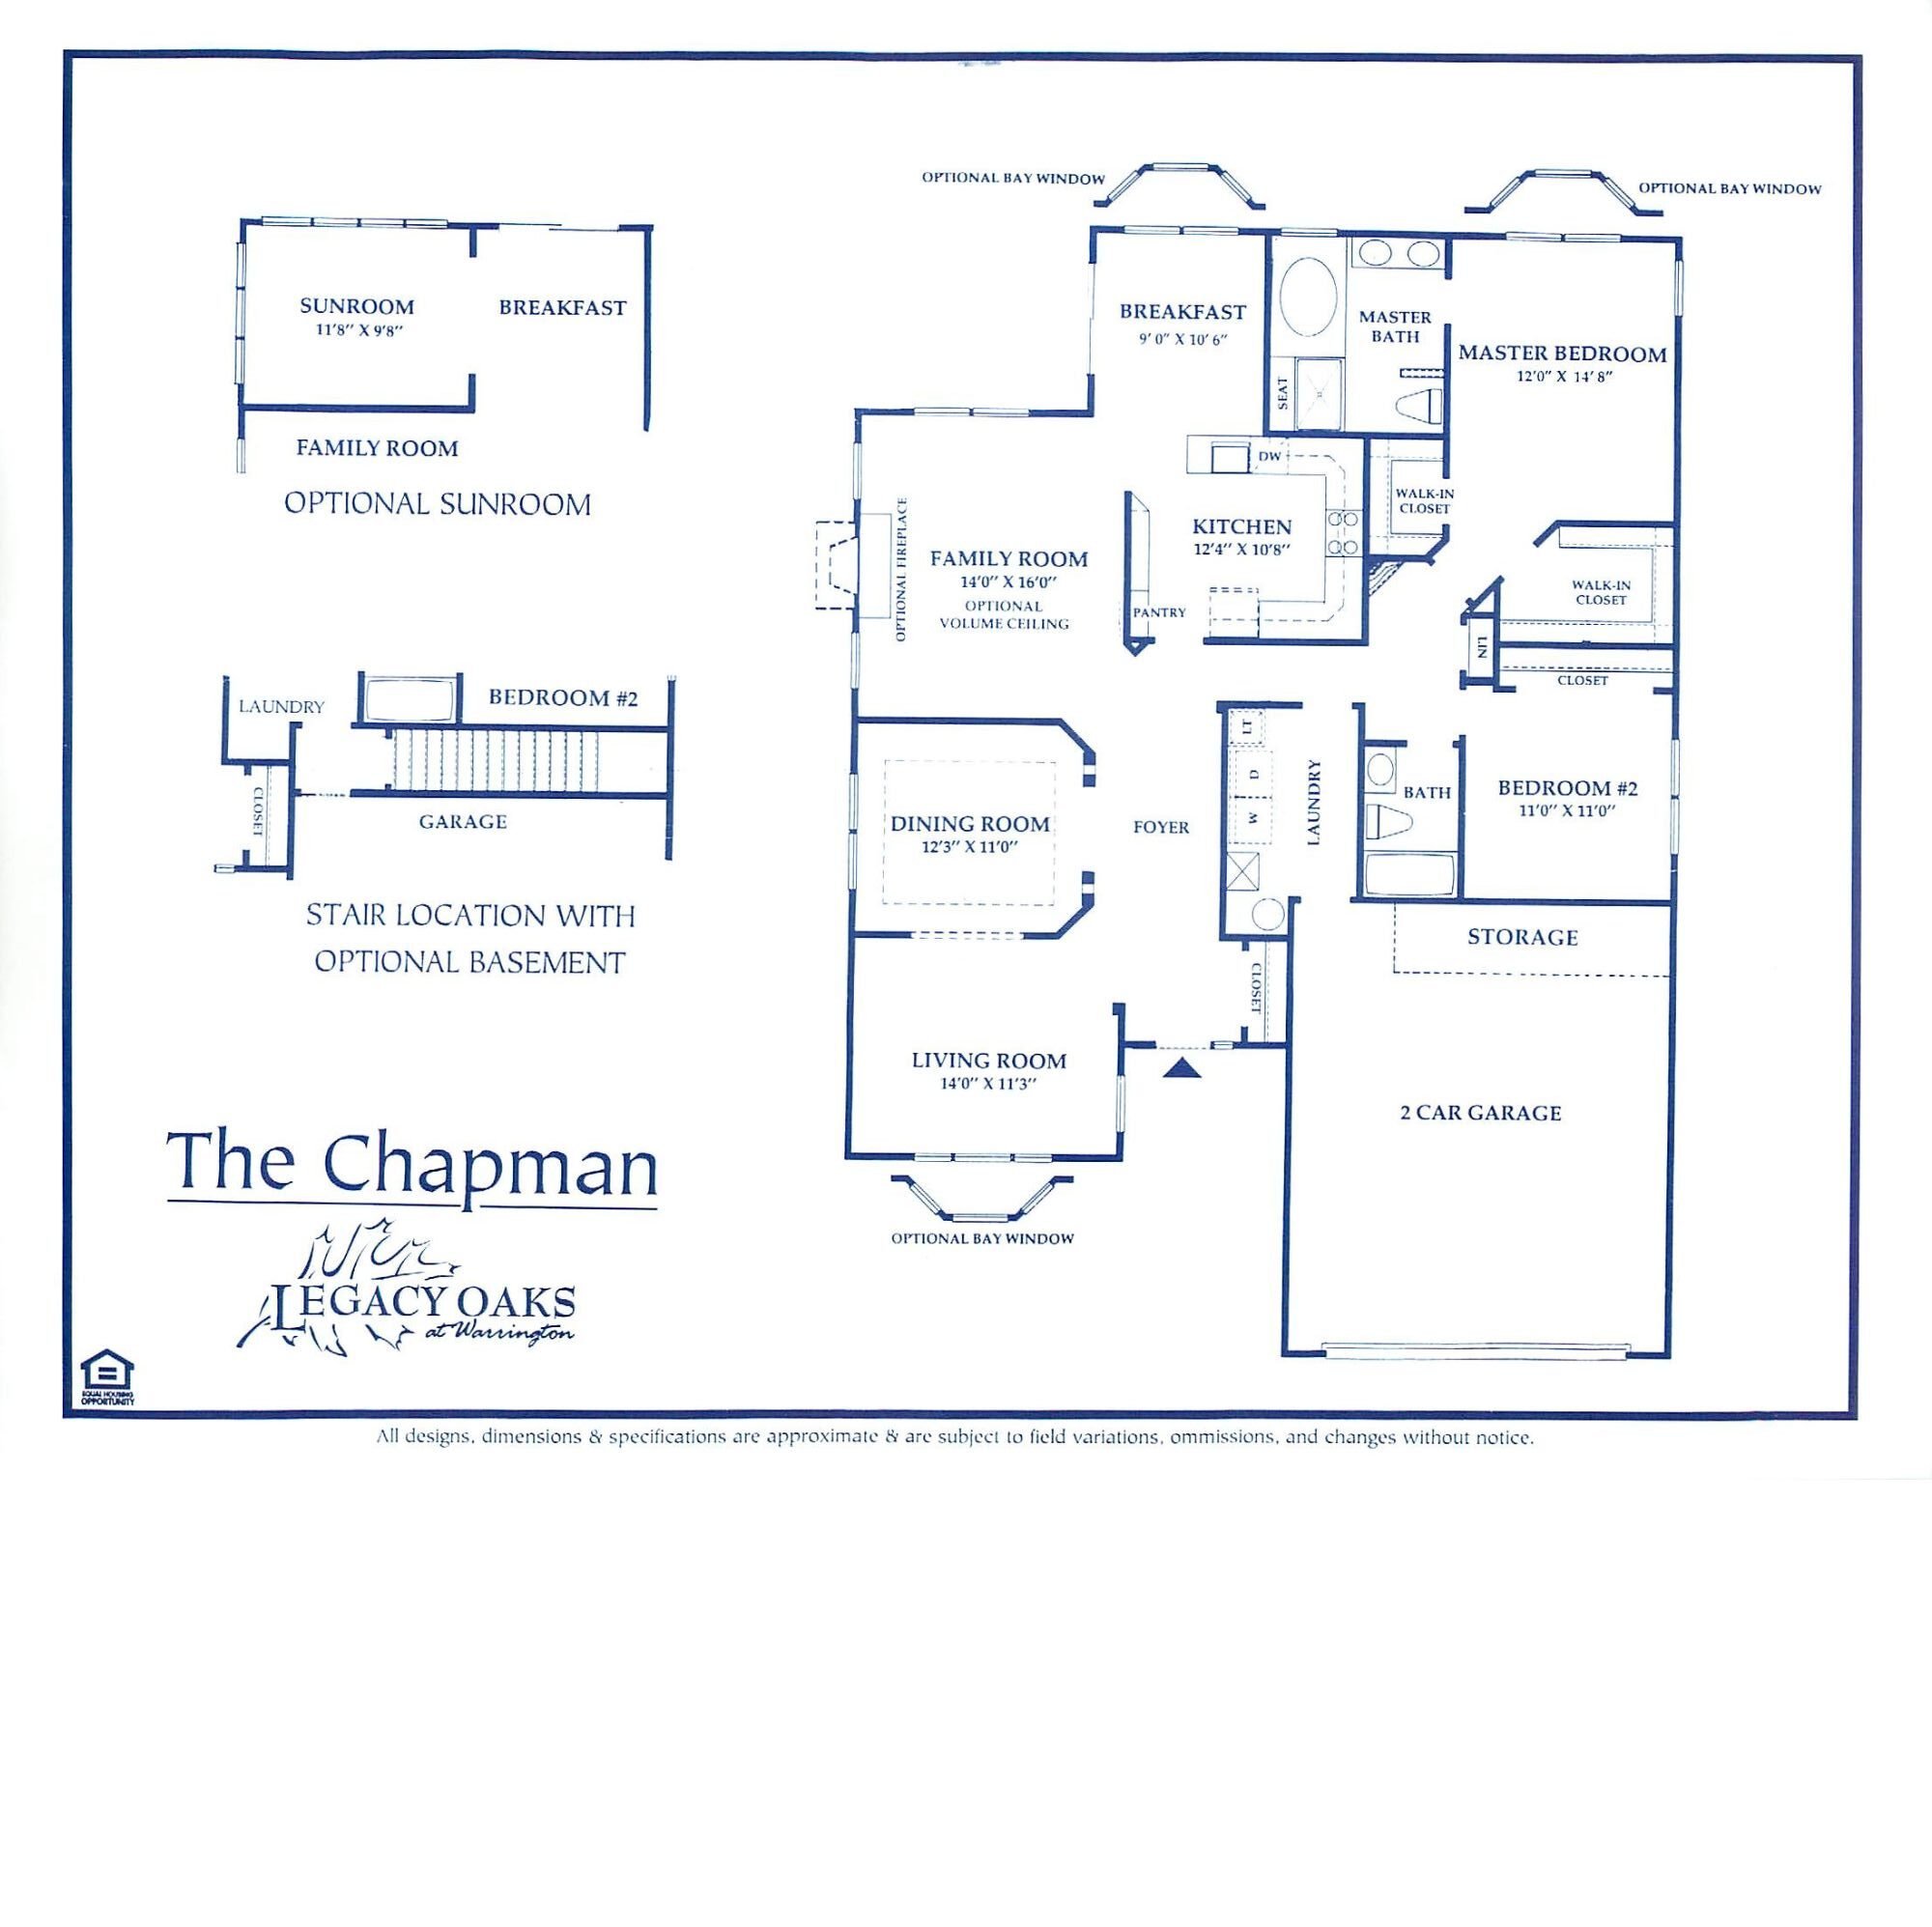 legacy oaks chapman 1 story floor plan2A